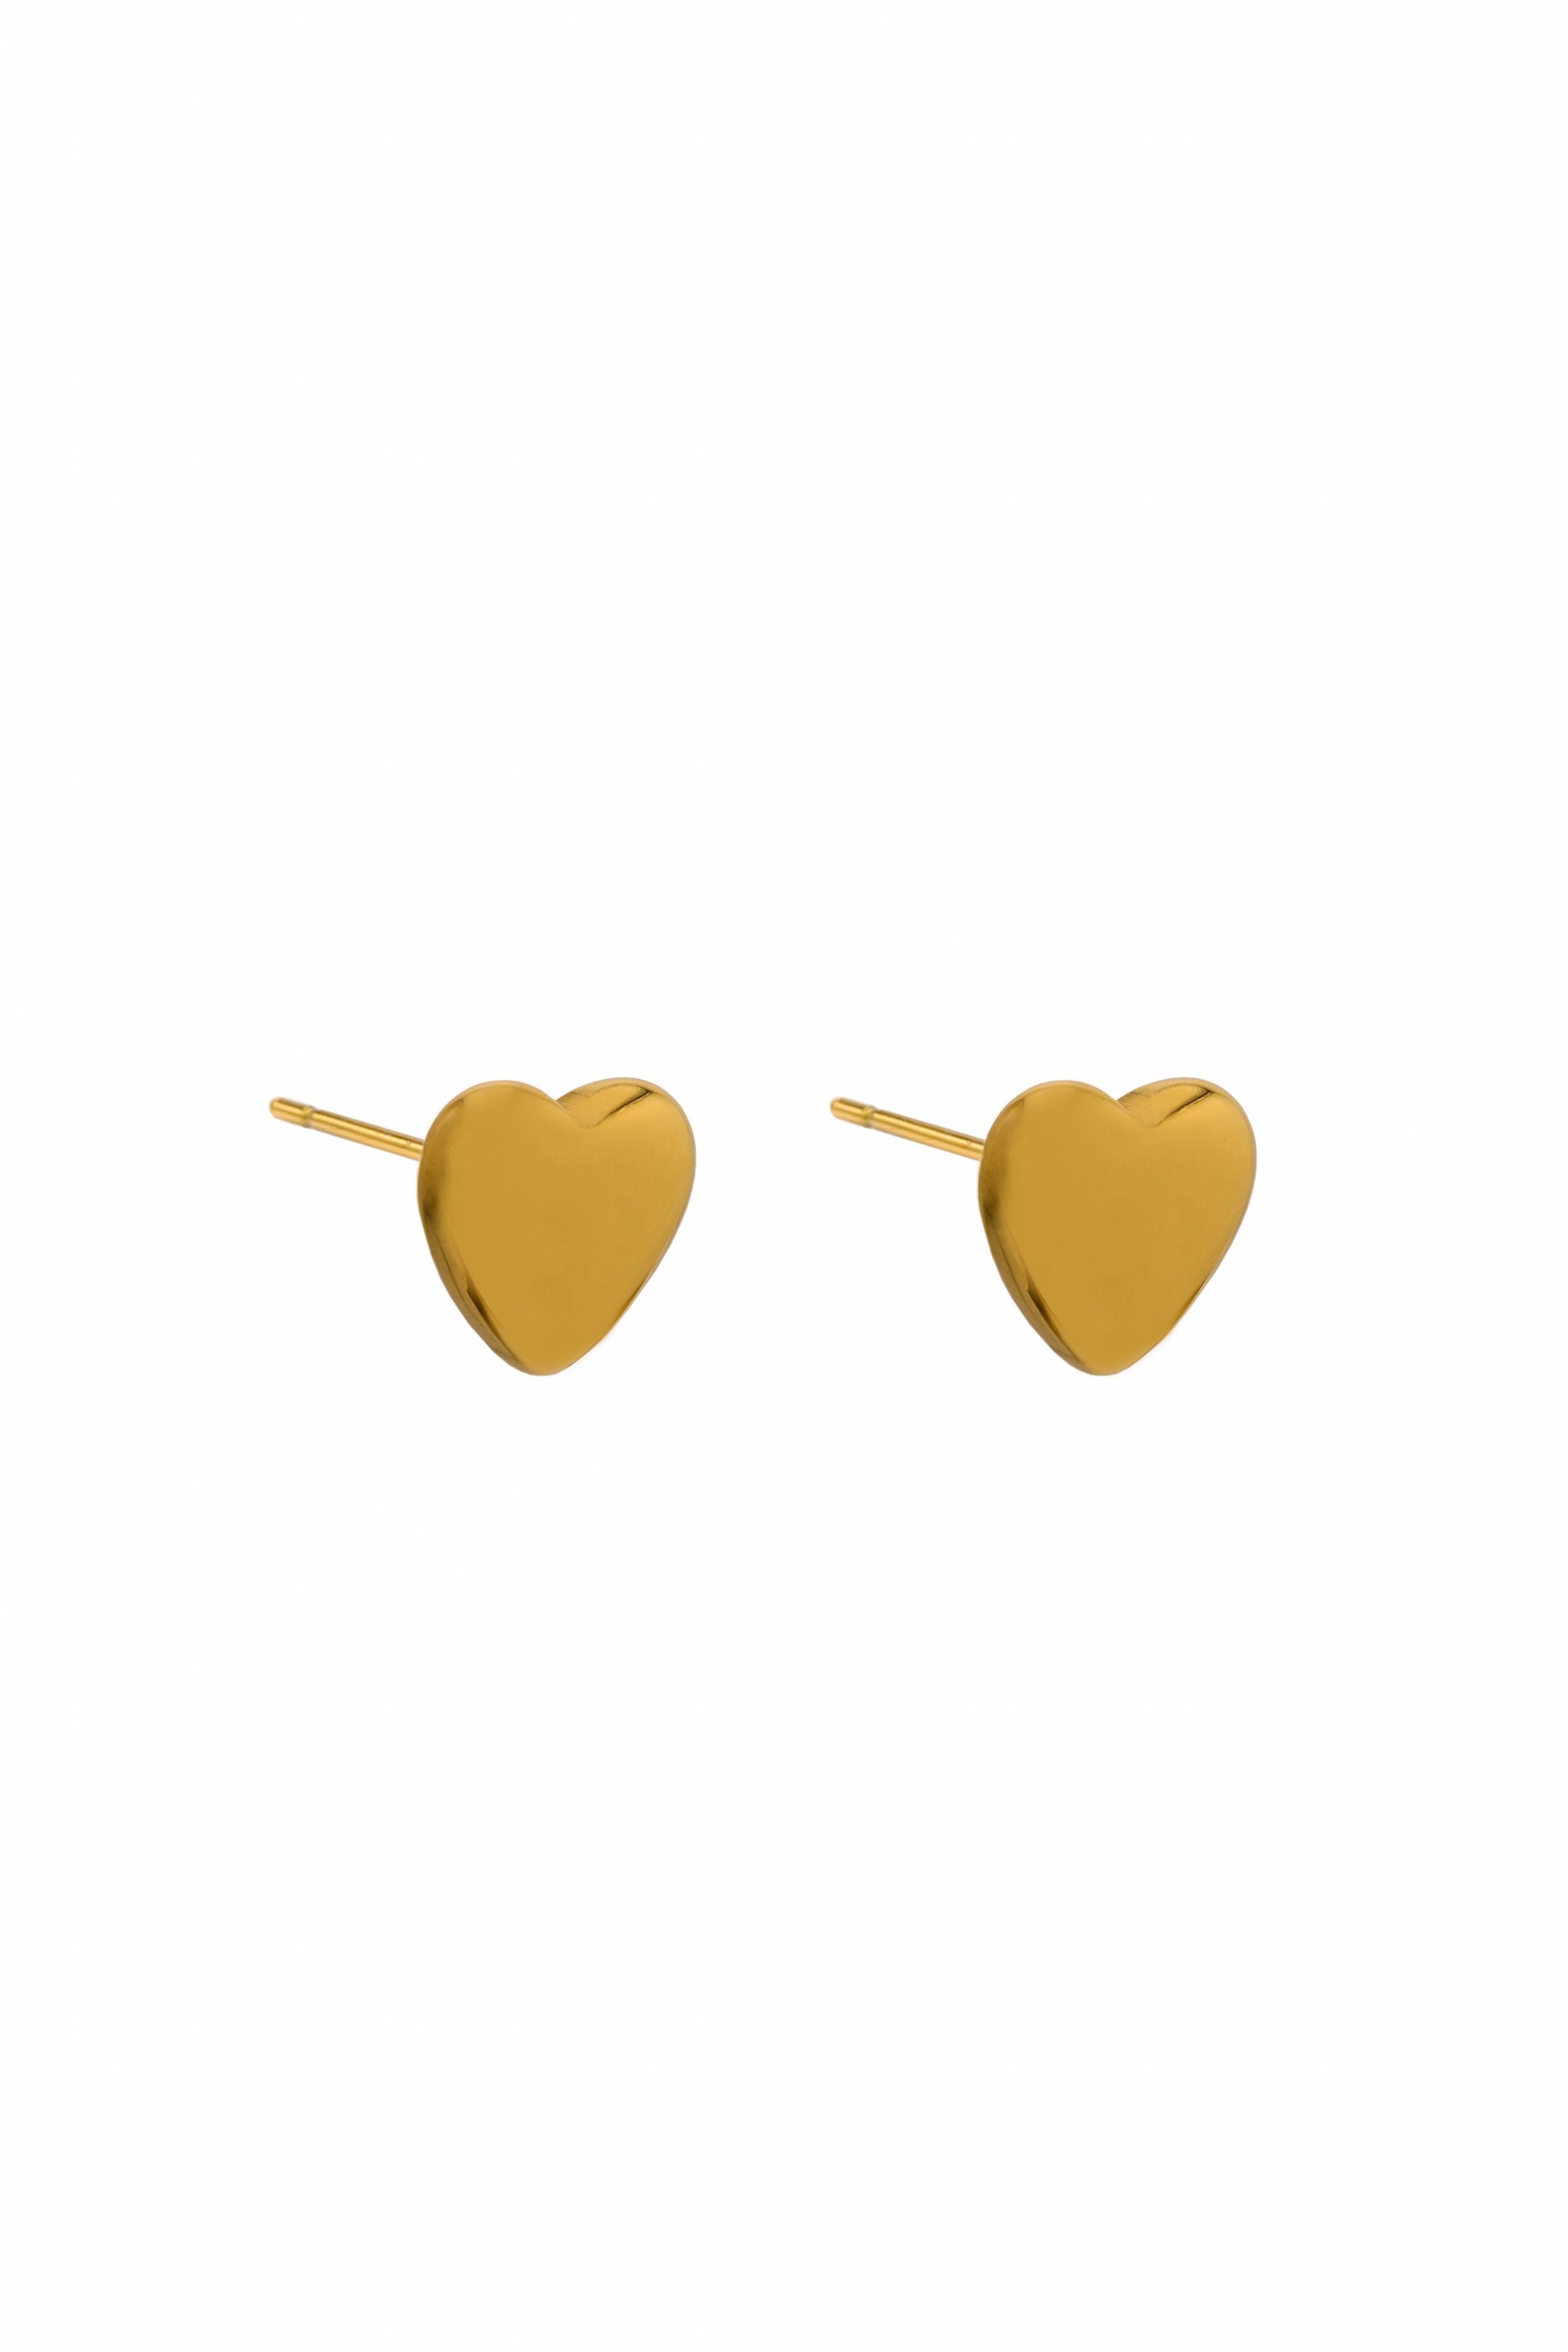 &quot;Nanna&quot; &amp; &quot;Grandma&quot; Carisma Pendant, Qalbi Pendant &amp; Heart of Gold Earing Gift Set